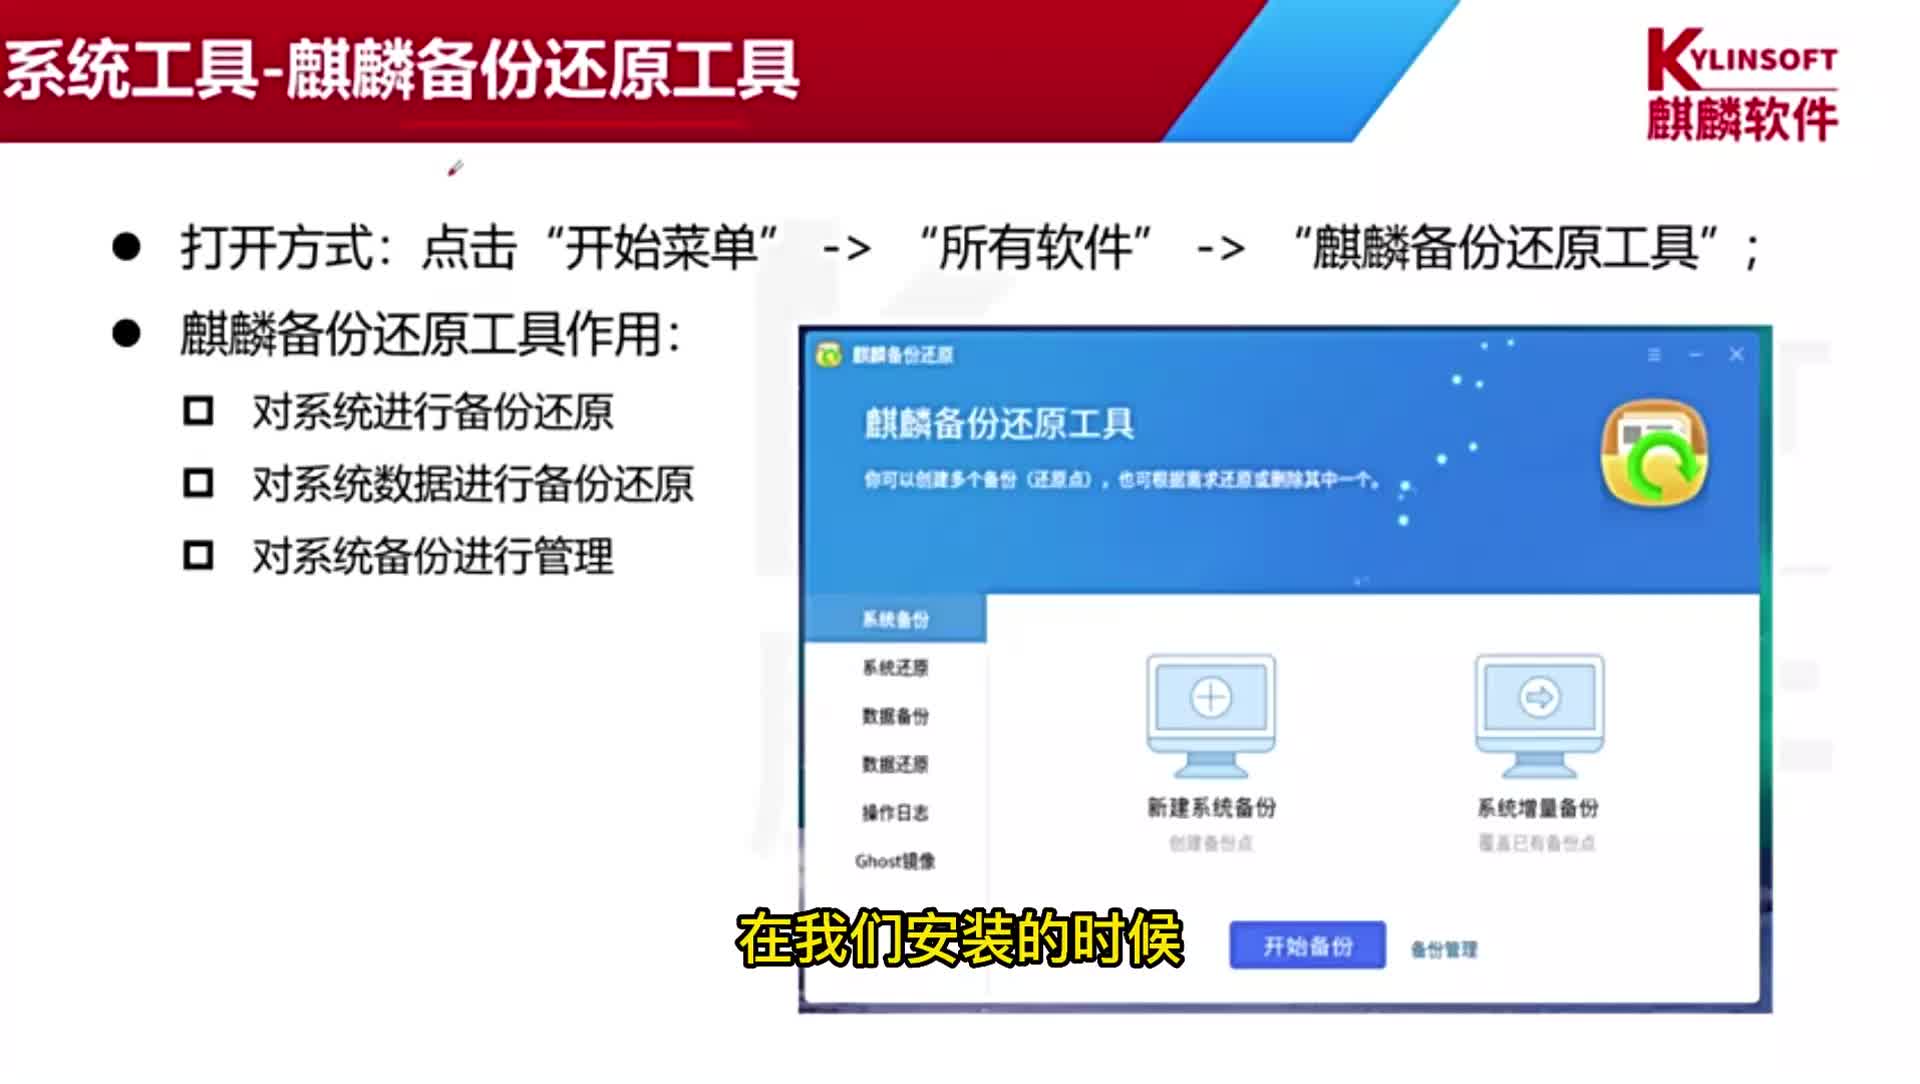 3.6 麒麟软件商店 #麒麟操作系统应用高级工程师 